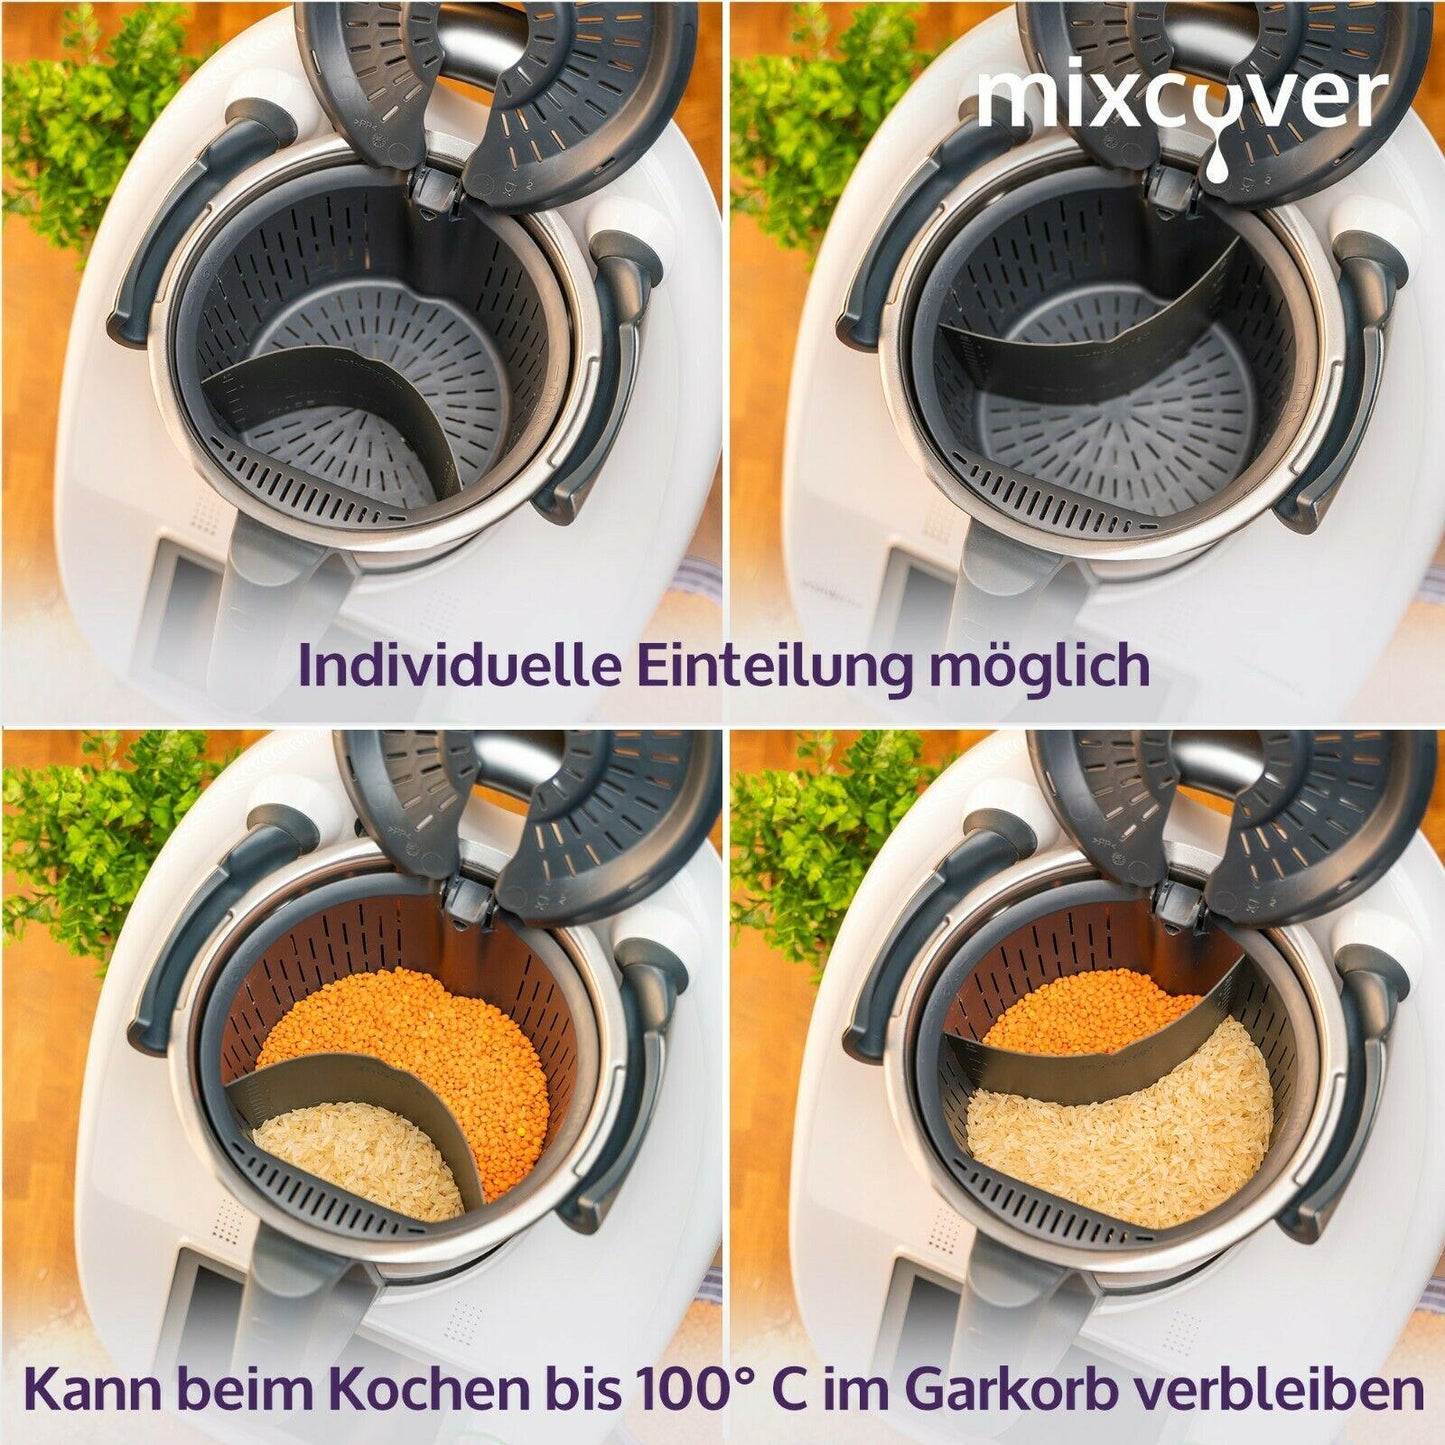 mixcover Garkorbteiler für Thermomix TM6 TM5 TM31, Mixtopf-Schaber - Mixcover - Mixcover